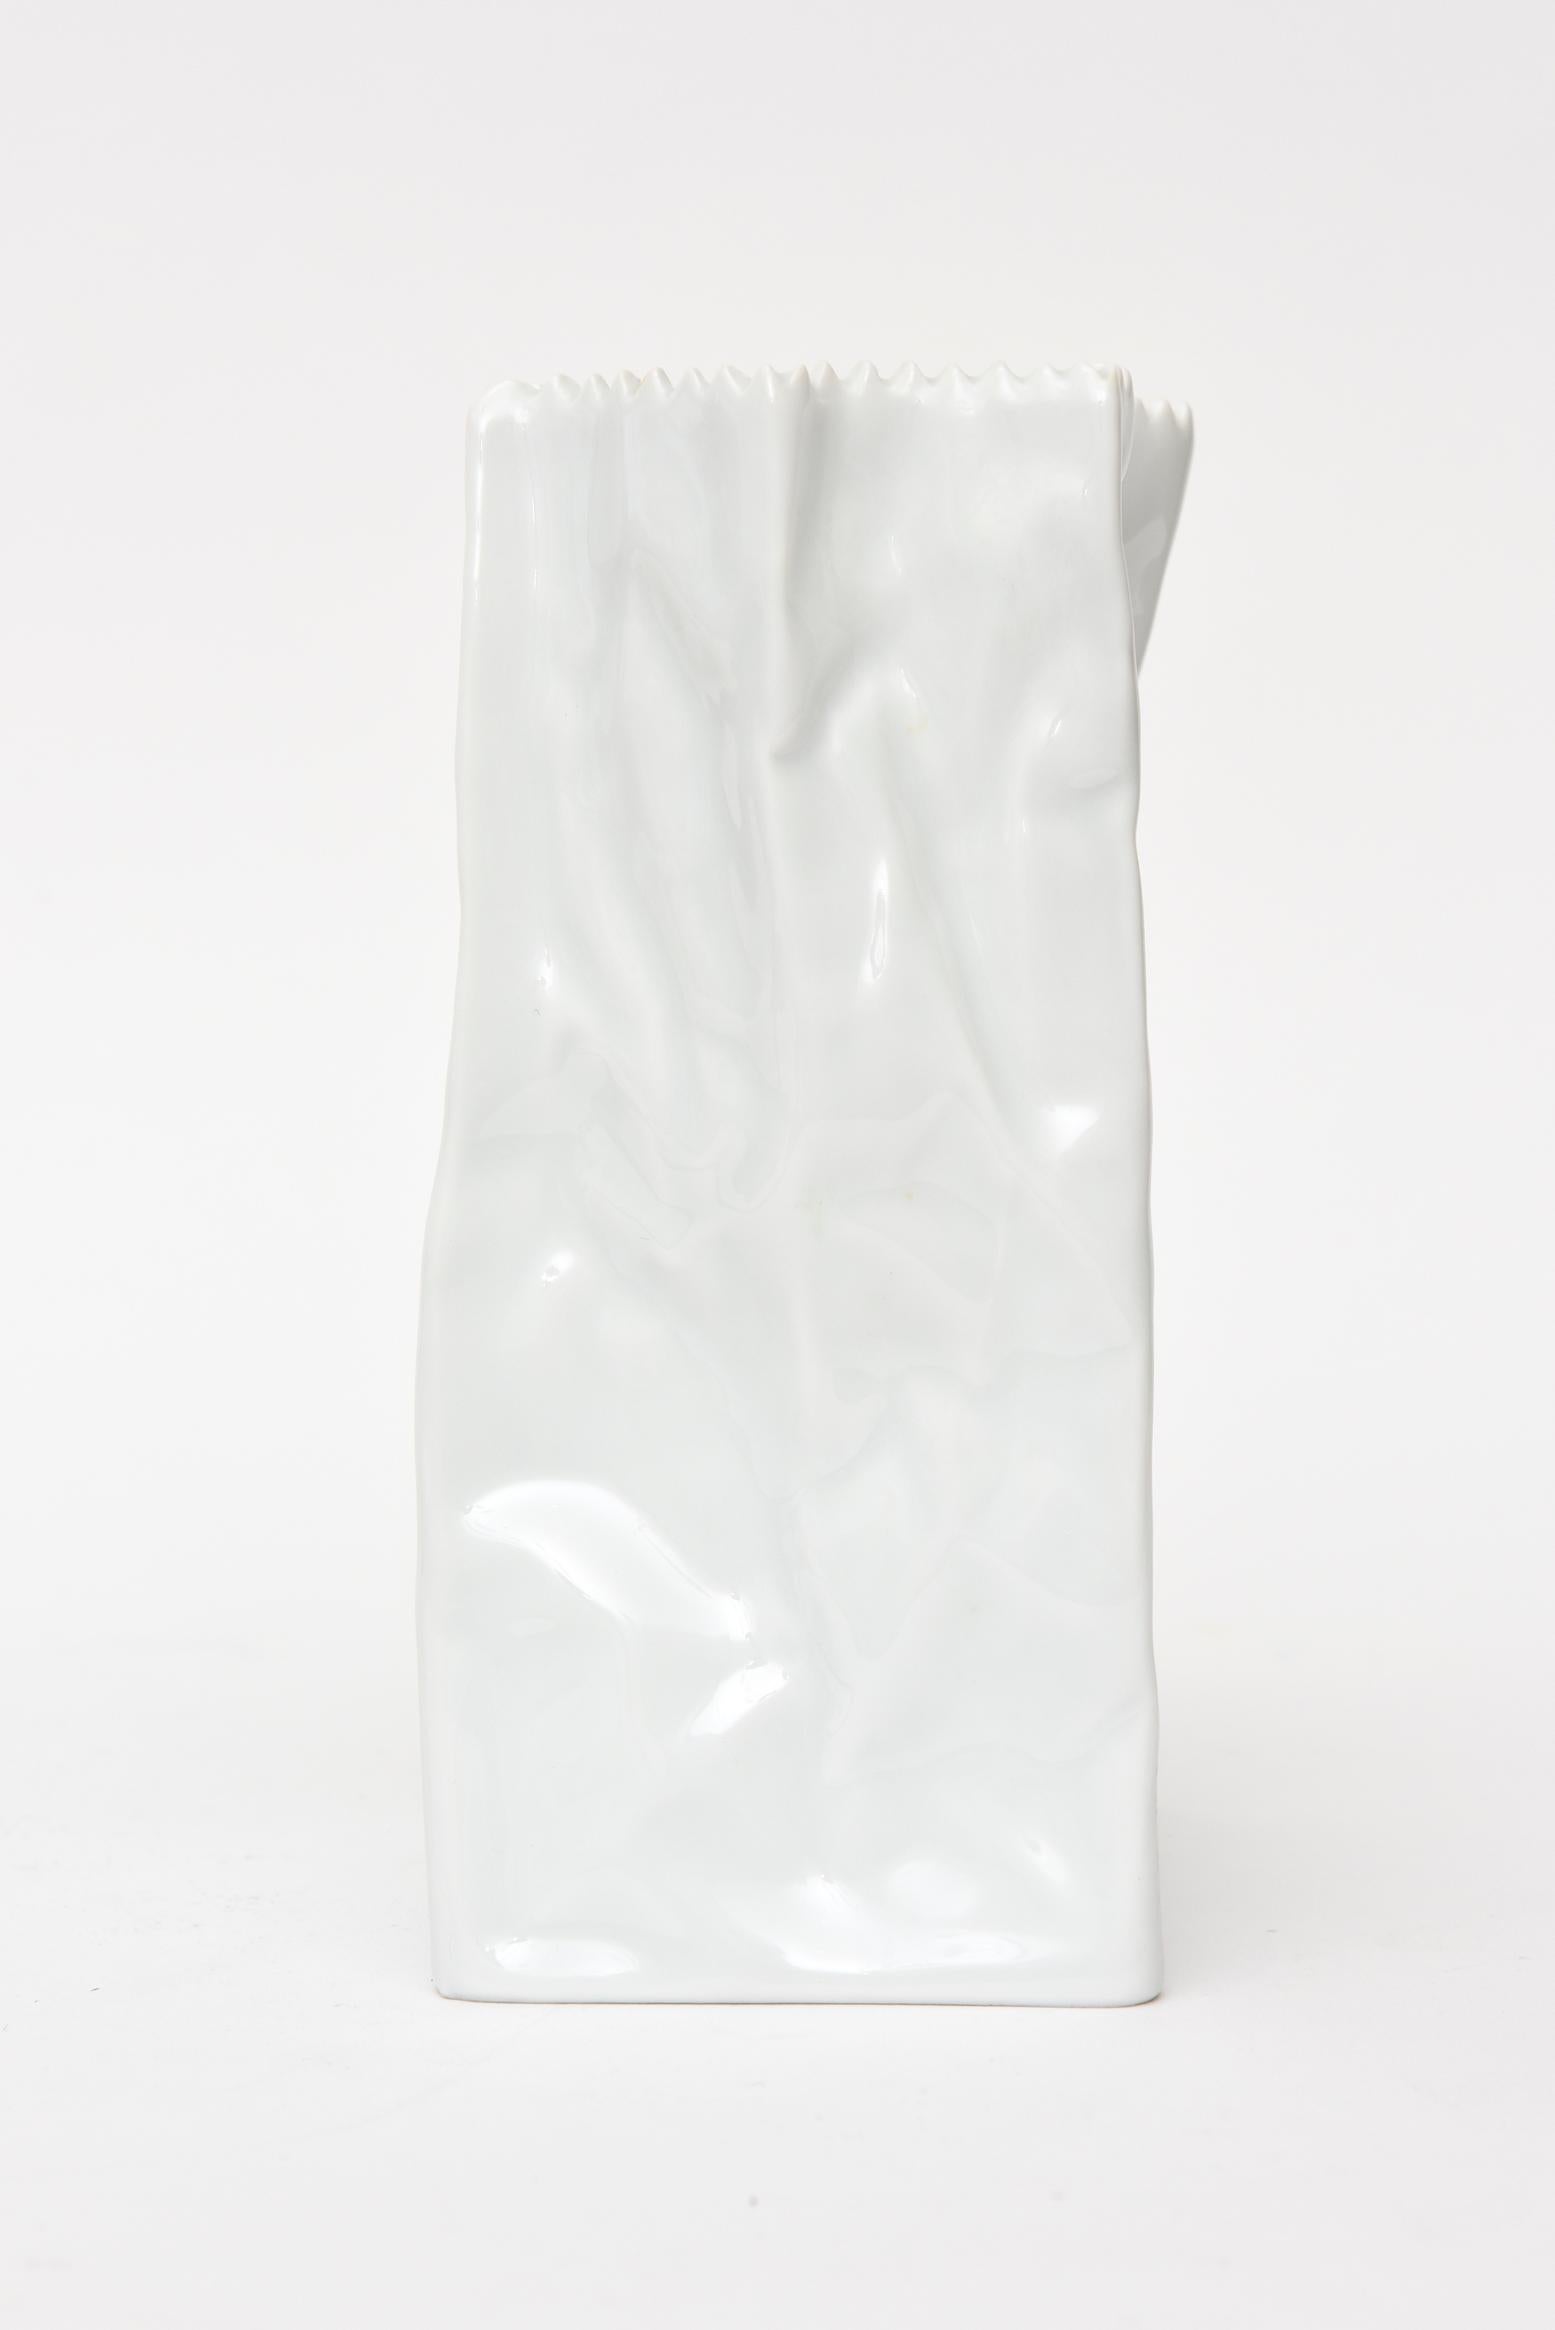 Organic Modern Rosenthal Glazed Porcelain Crushed Paper Bag Vase Sculpture